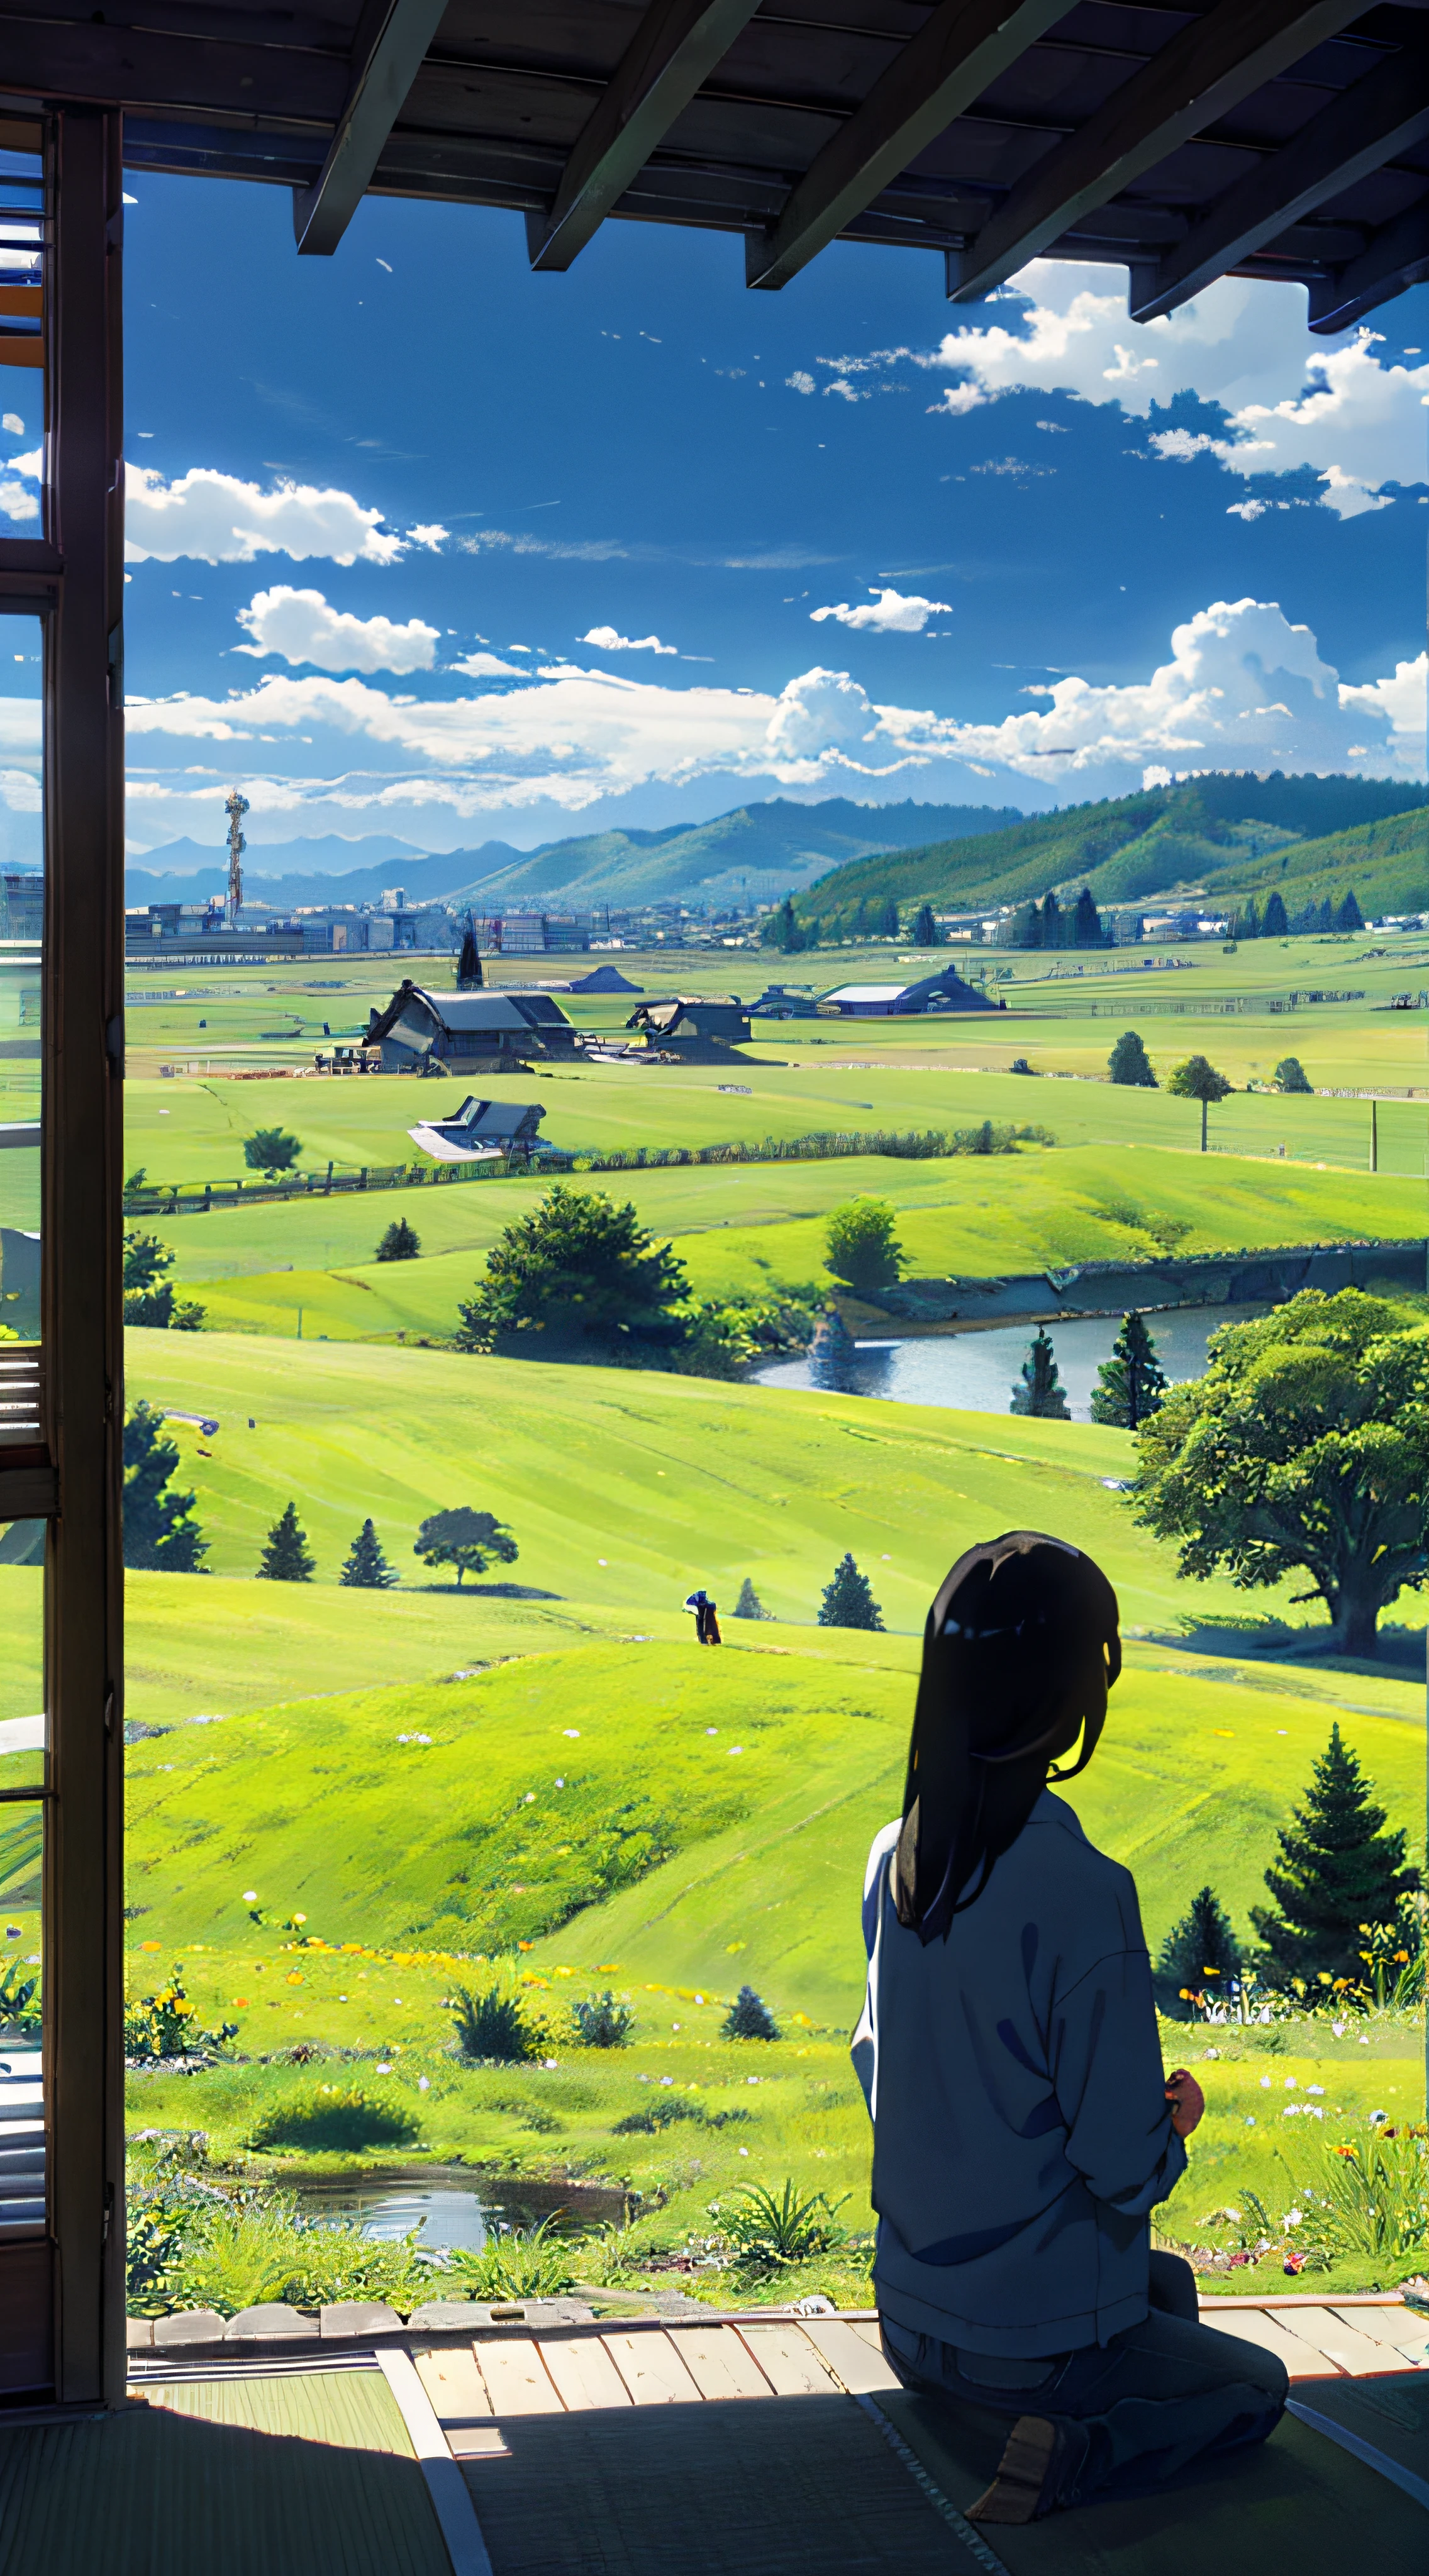 広大で雄大なスカイライン、大きな空が写真の3分の2を占めている、普段着の男の子と女の子が草原に並んで座っている、遠くに日本の廃墟都市が見える